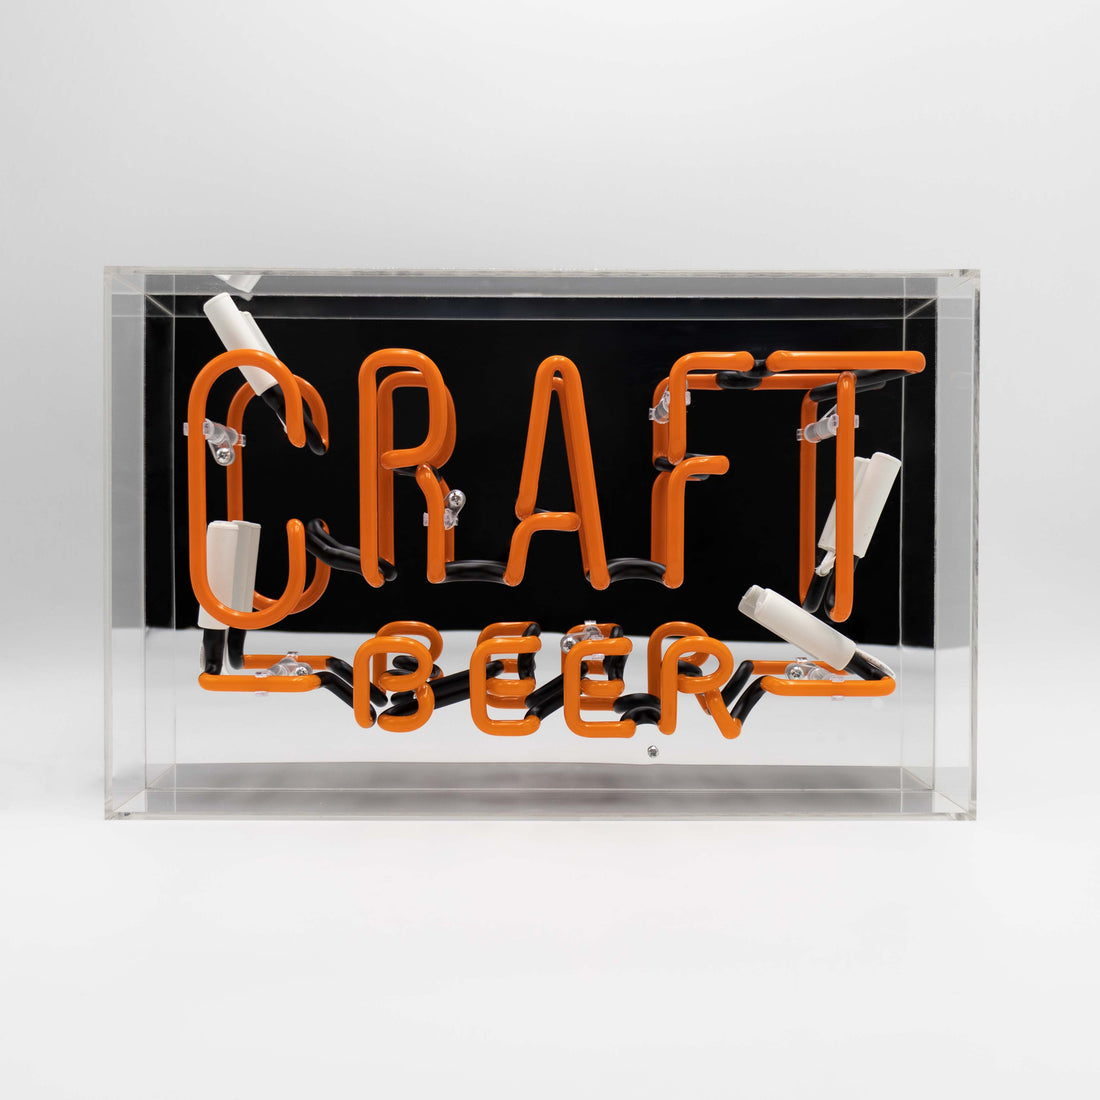 Cartel de neón de cristal grande "Cerveza artesanal